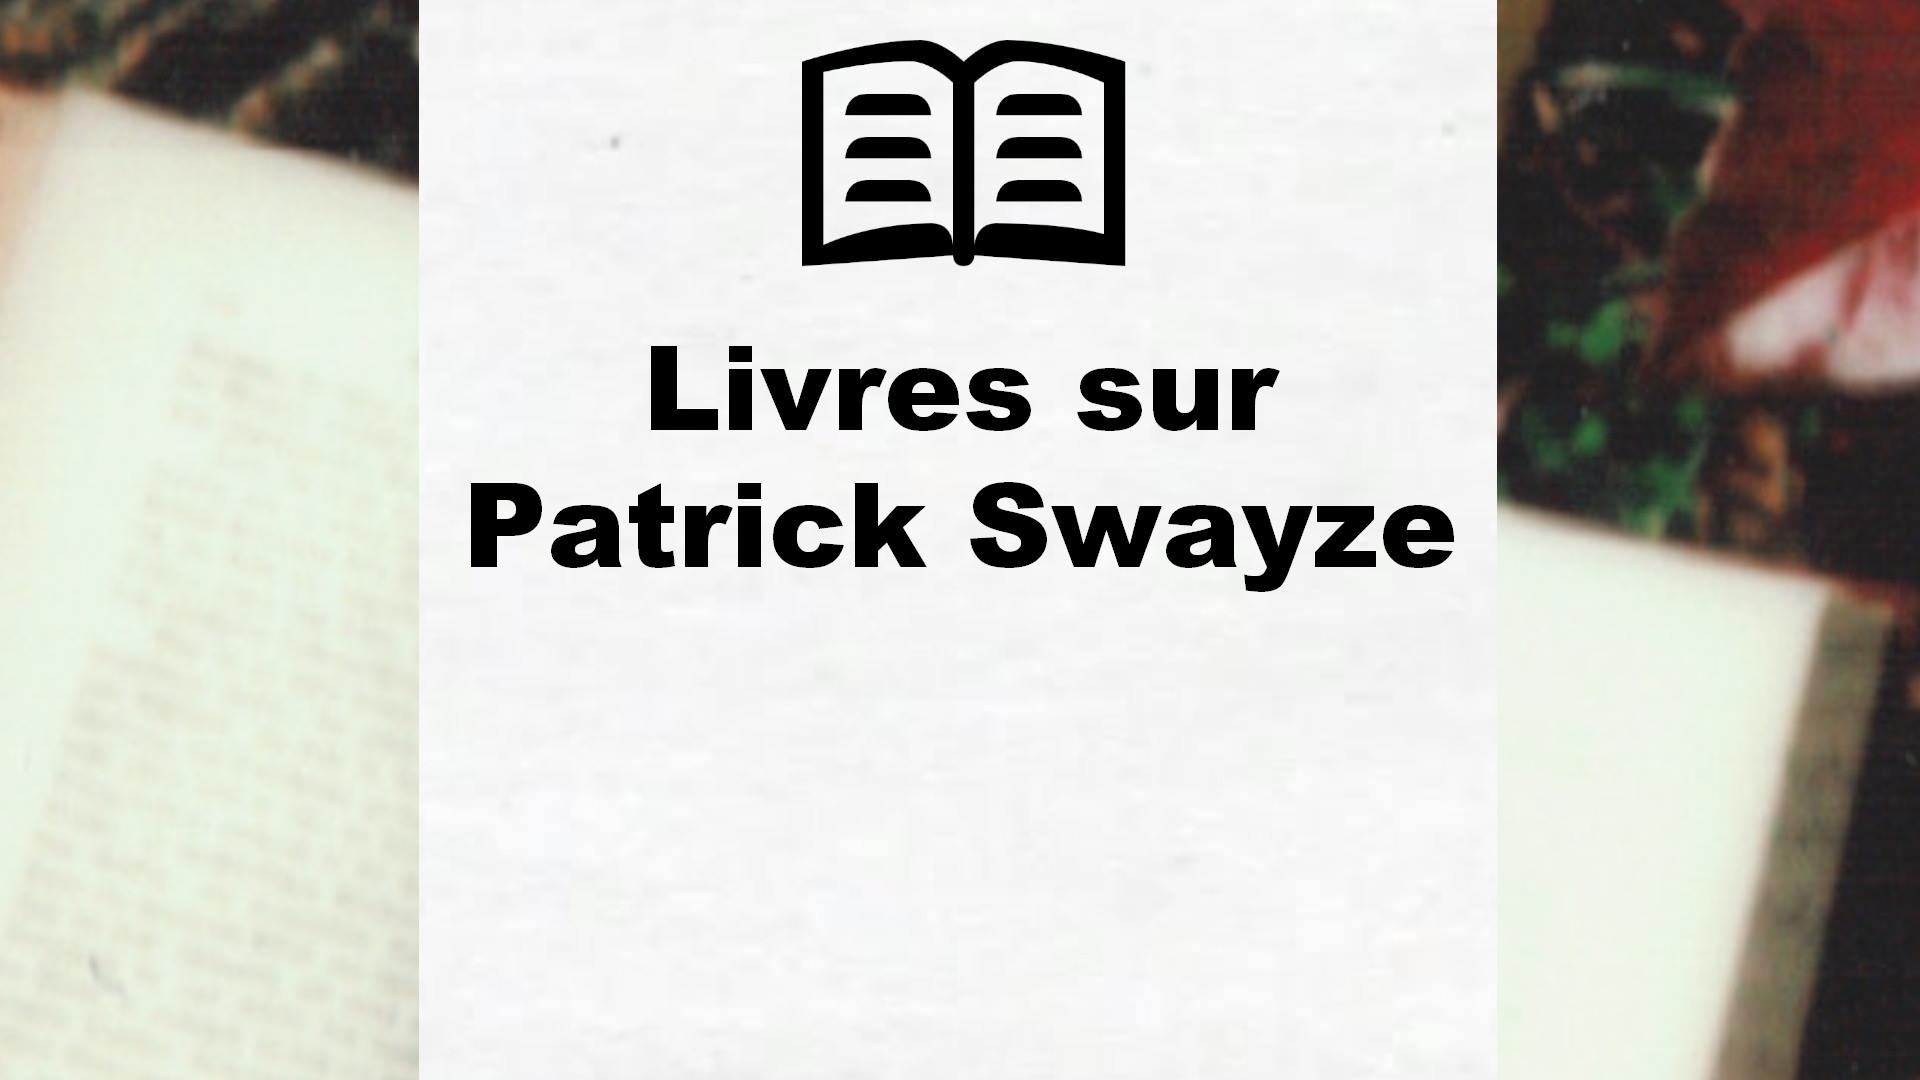 Livres sur Patrick Swayze